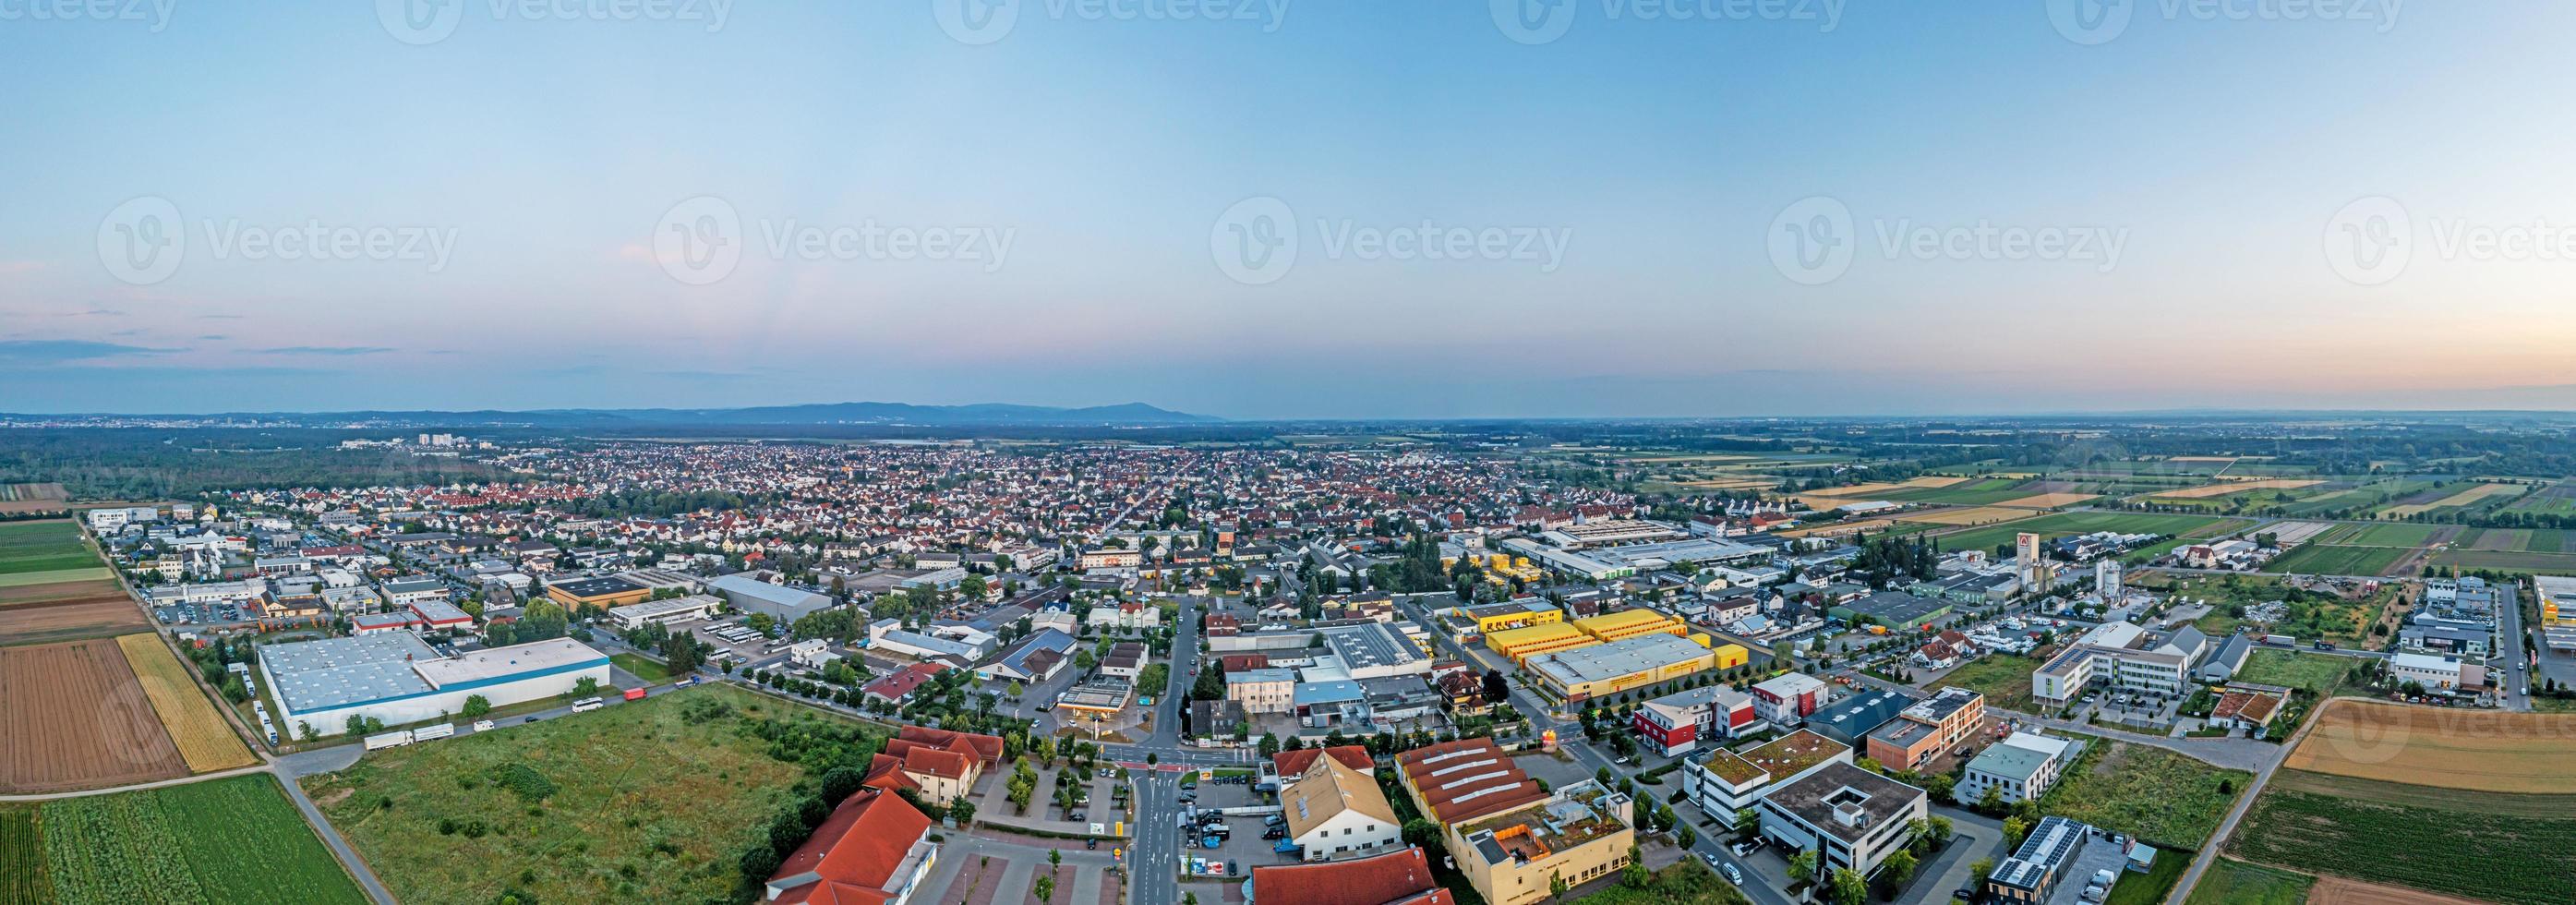 panorama de drones sobre el pueblo alemán griesheim cerca de darmstadt en el sur de hesse por la noche foto